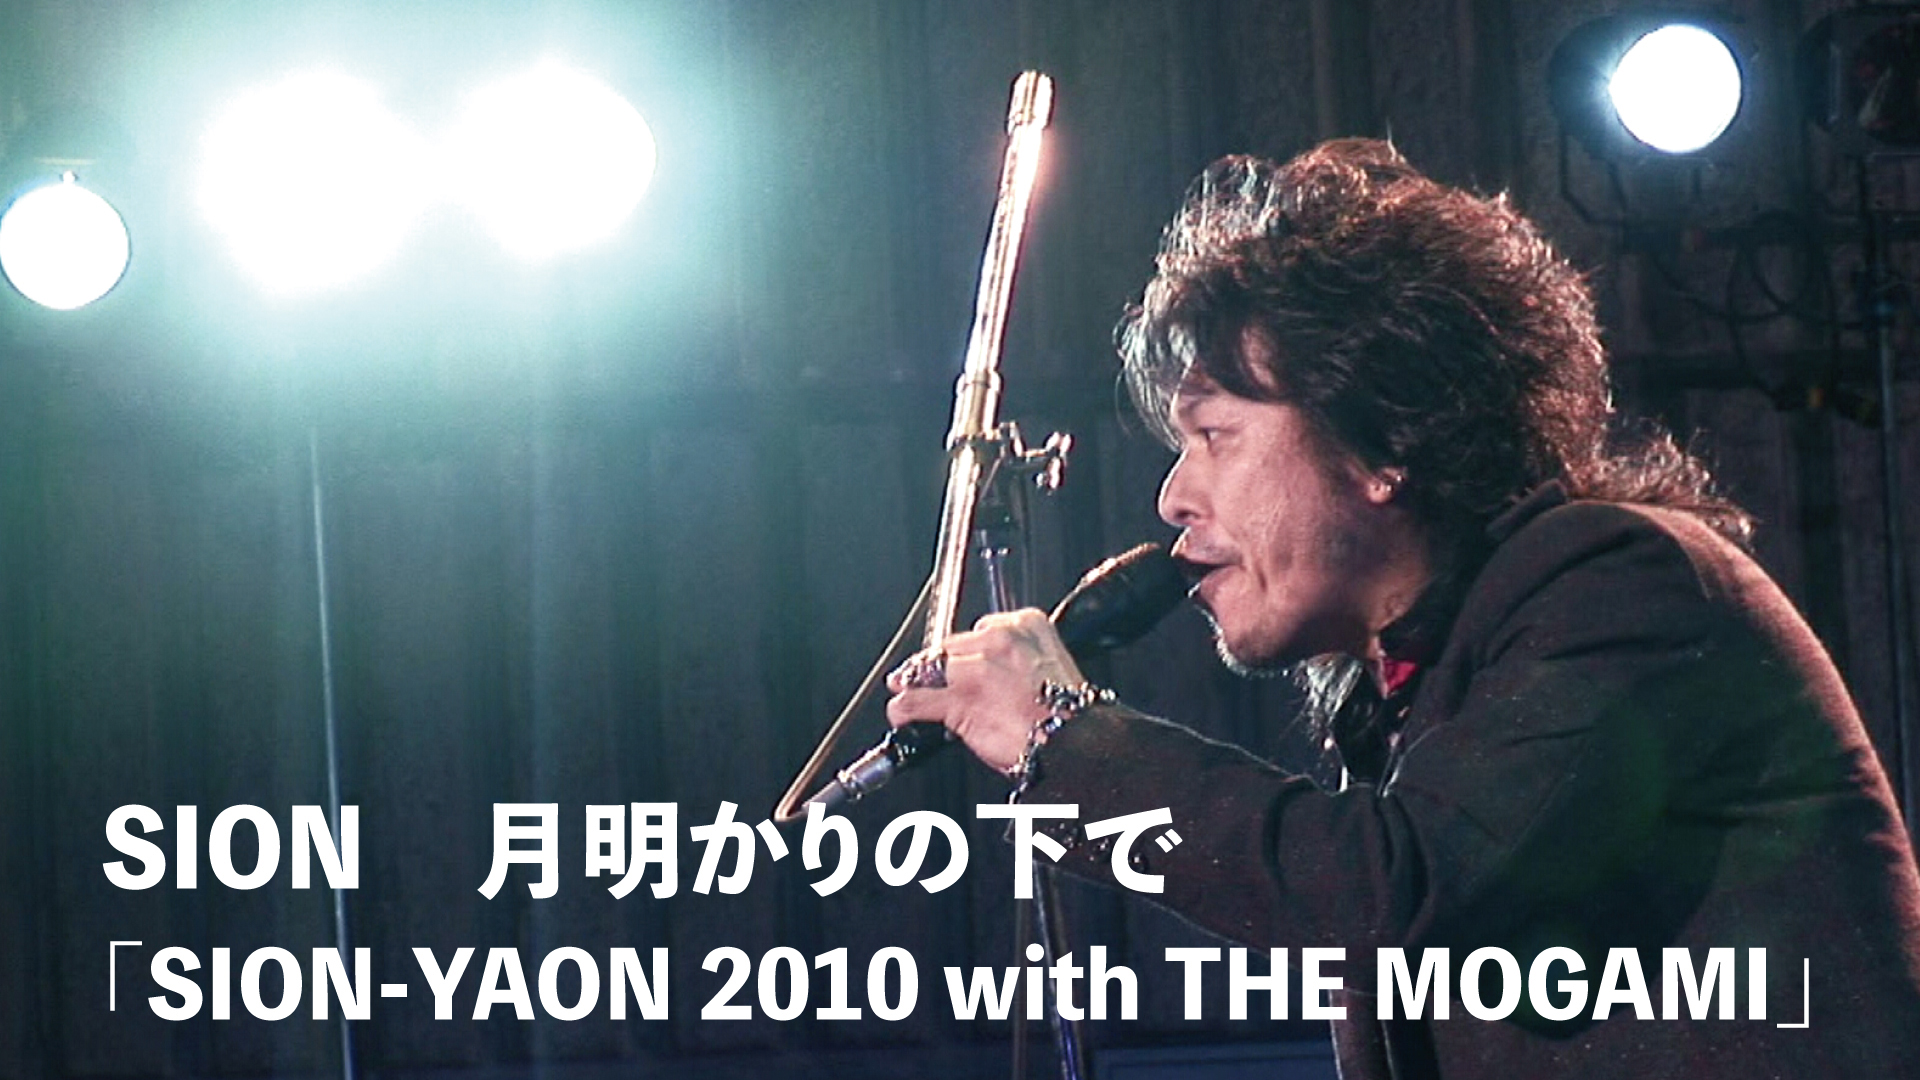 月明かりの下で「SION-YAON 2010 with THE MOGAMI」(音楽・ライブ / 2010) - 動画配信 | U-NEXT  31日間無料トライアル